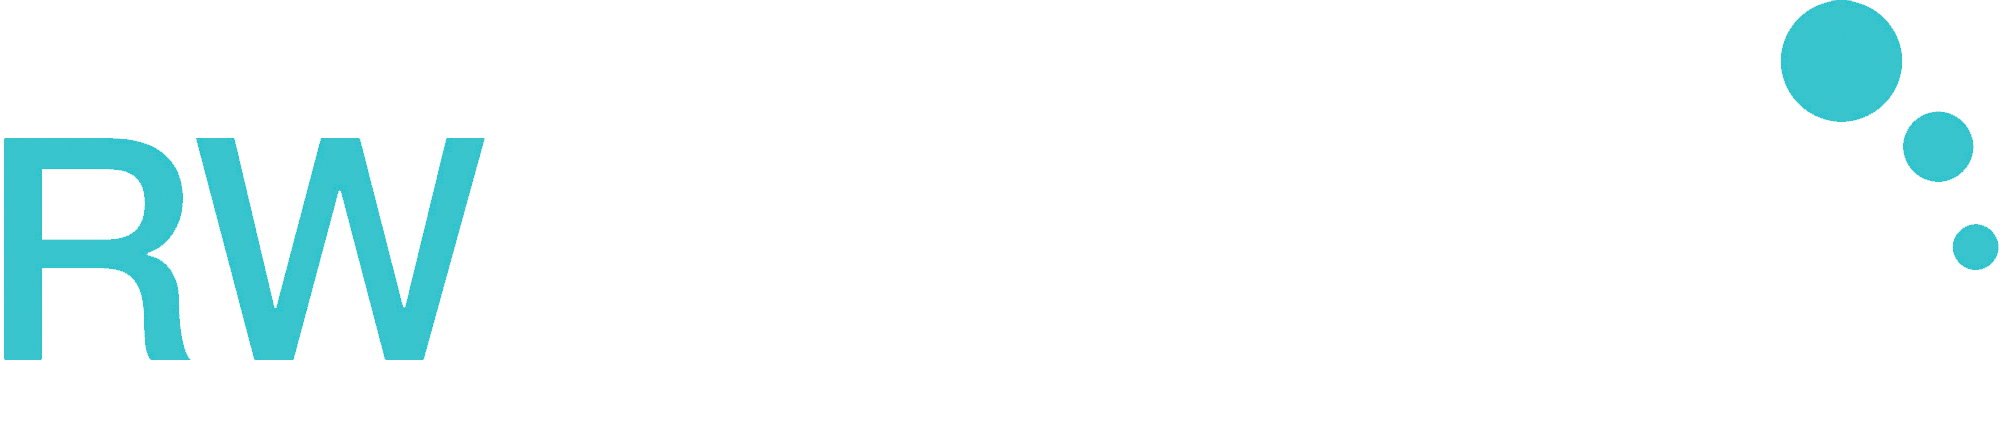 rwpsycholog-logo-white